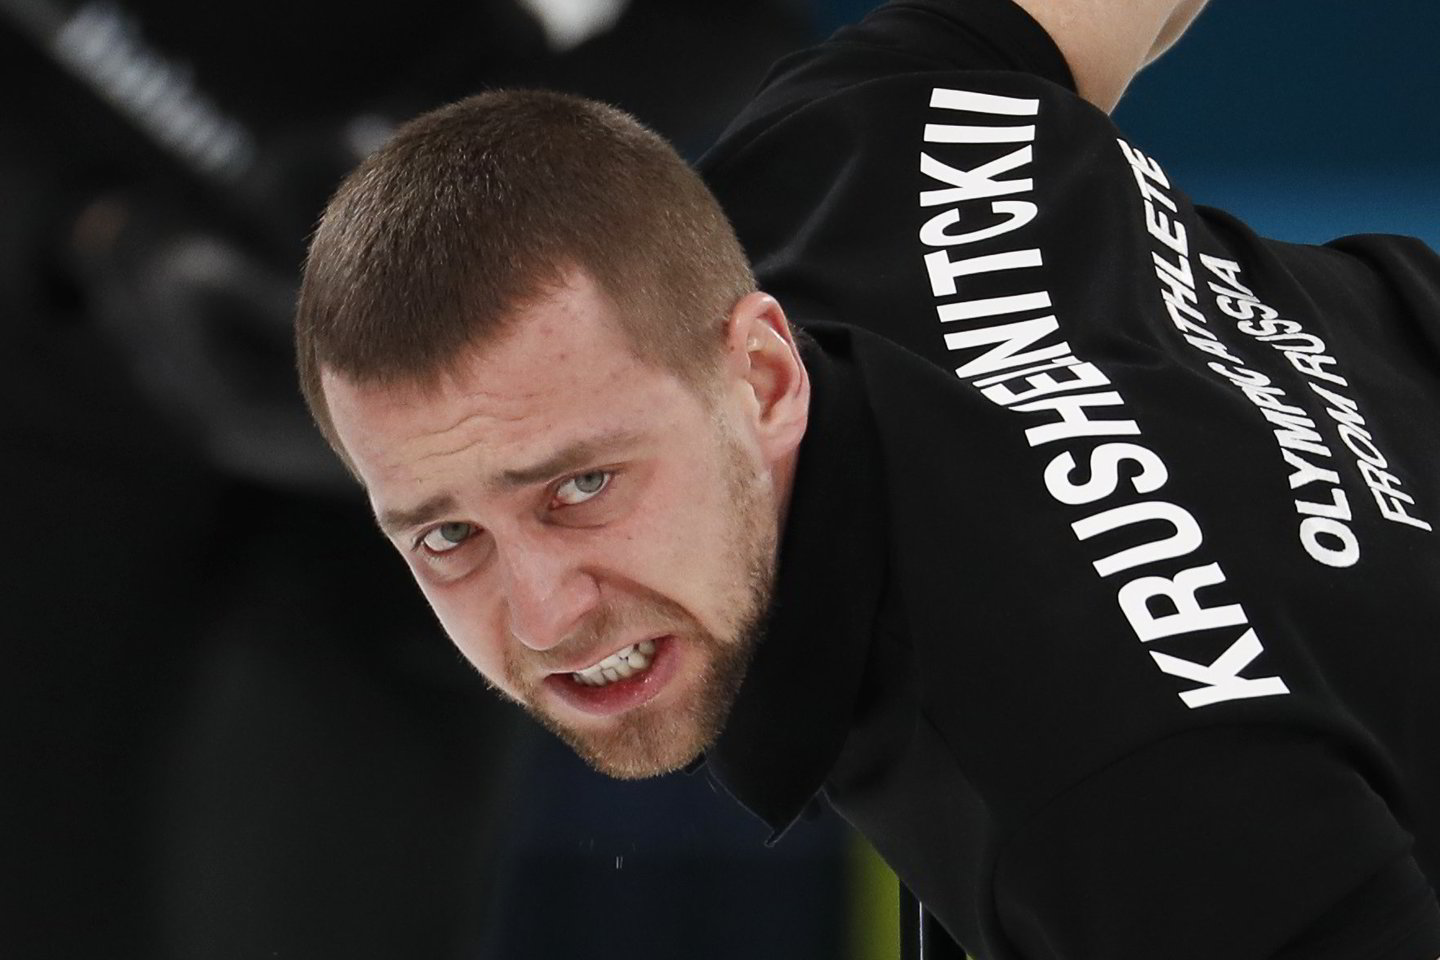  A.Krušelnickis oficialiai pripažintas vartojęs dopingą Pjongčango olimpiadoje<br> AFP nuotr.